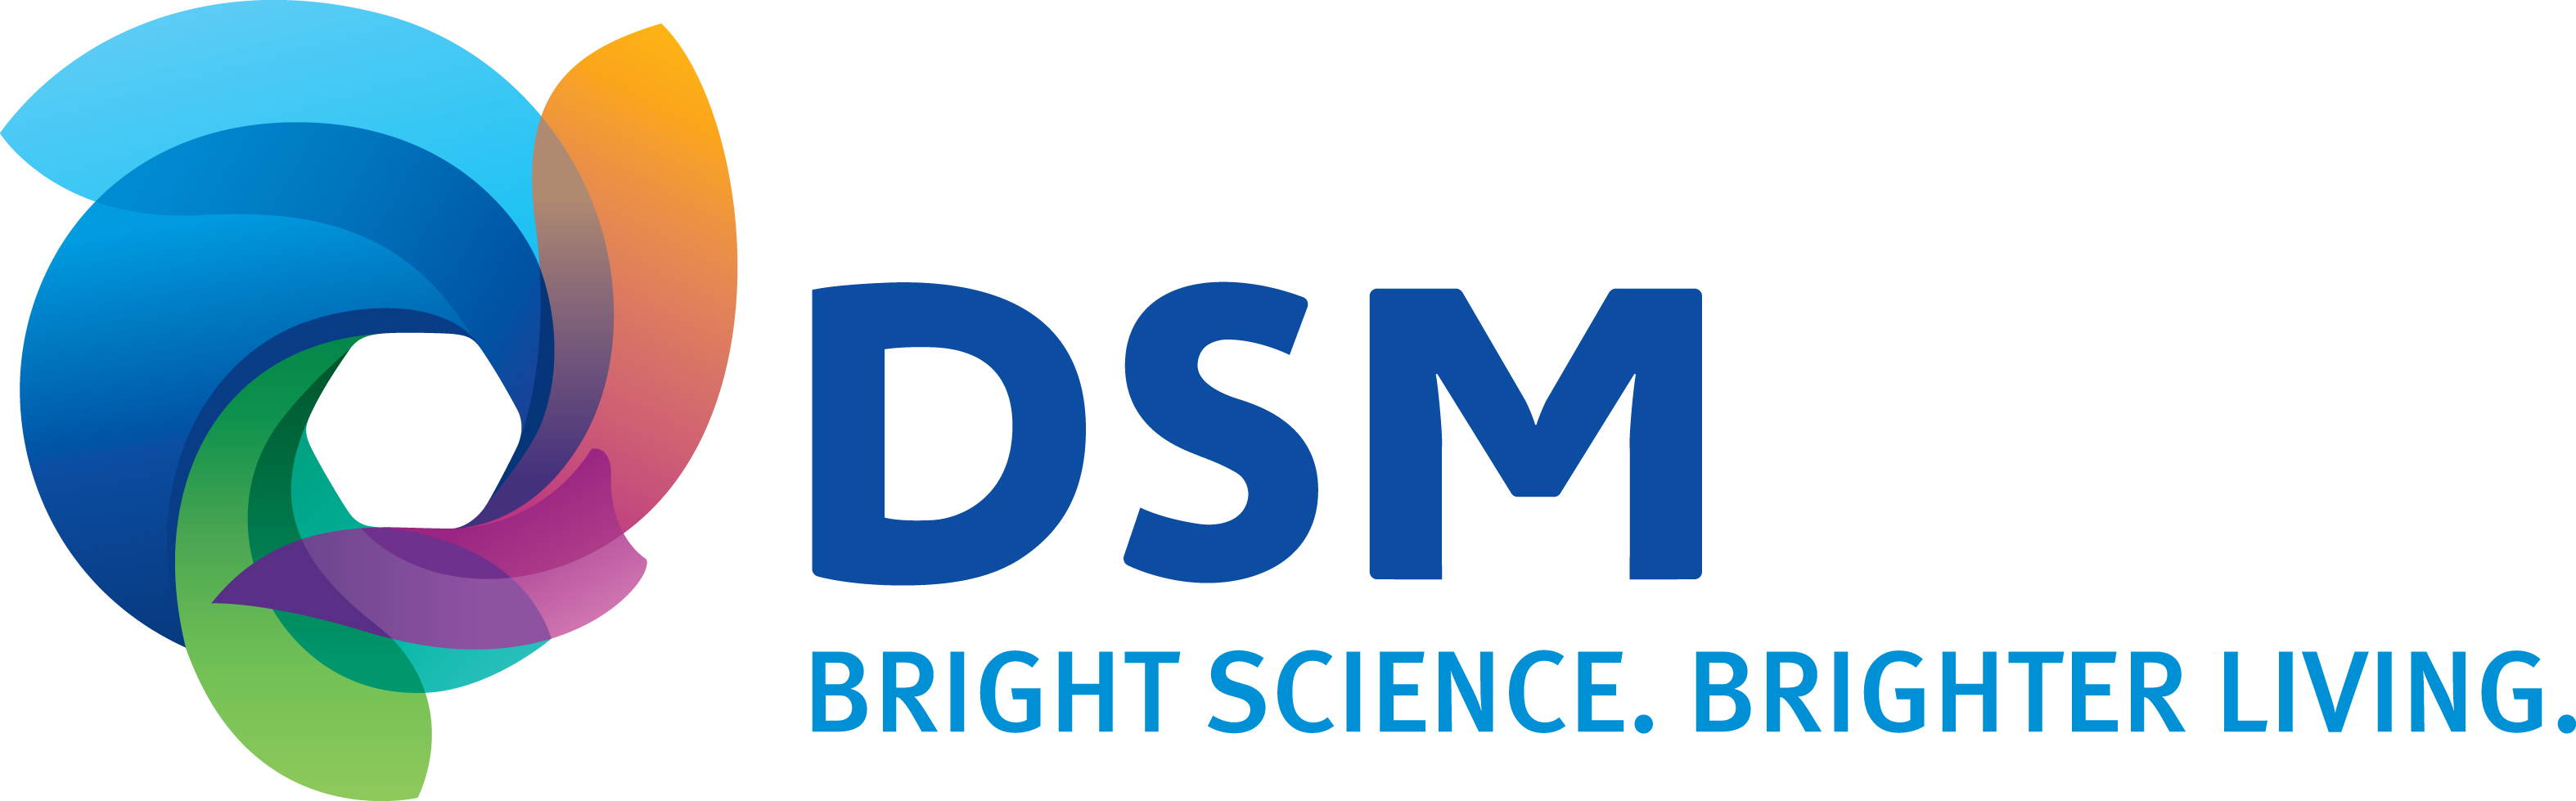 ETH sponsor DSM.jpg